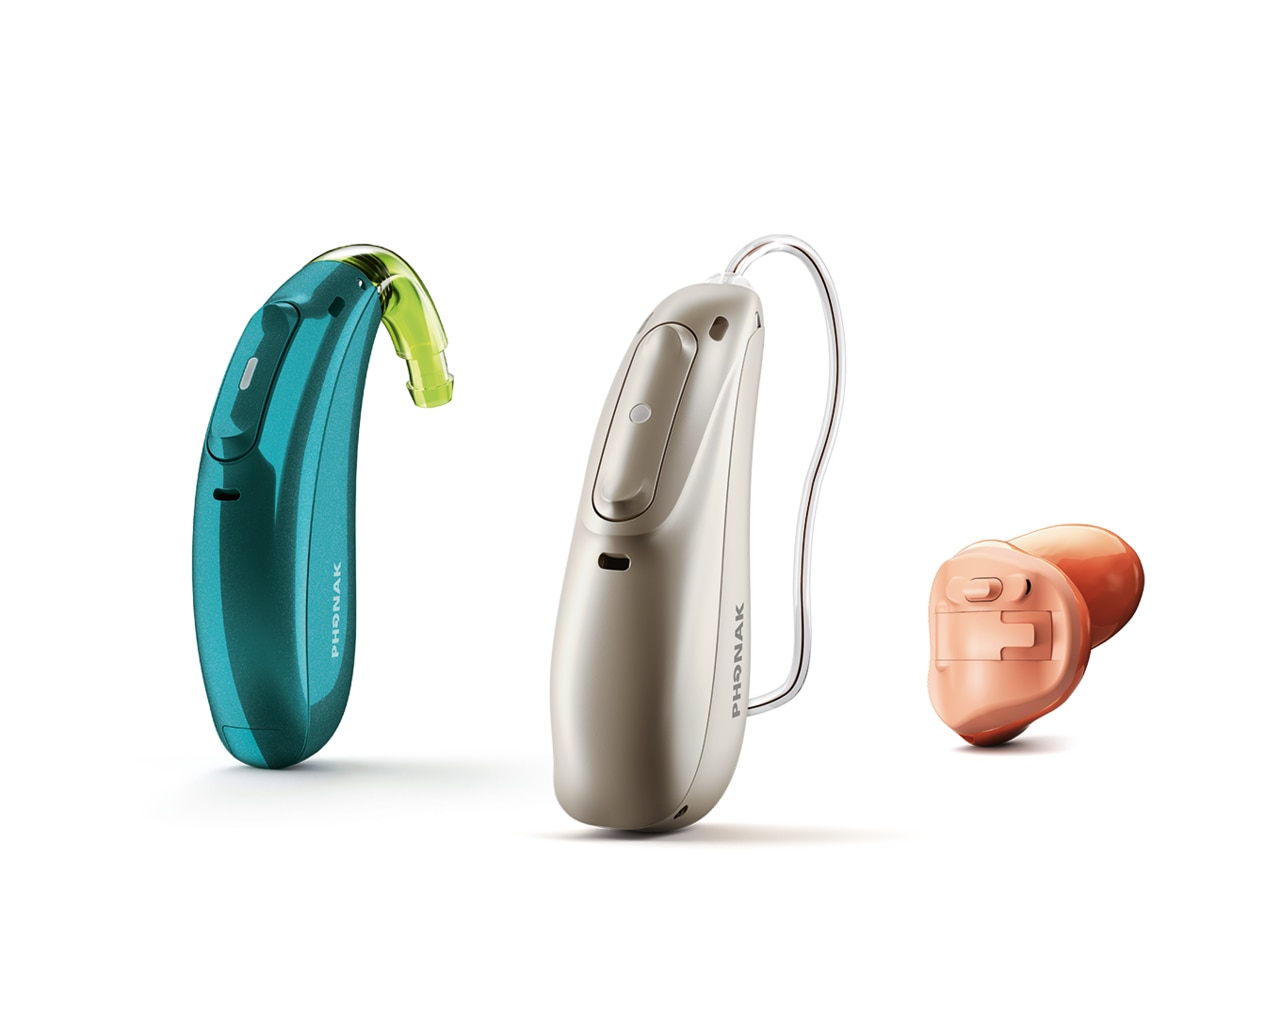 Trois types d’aides auditives Phonak : contour d’oreille, écouteur dans le conduit et dans l’oreille.